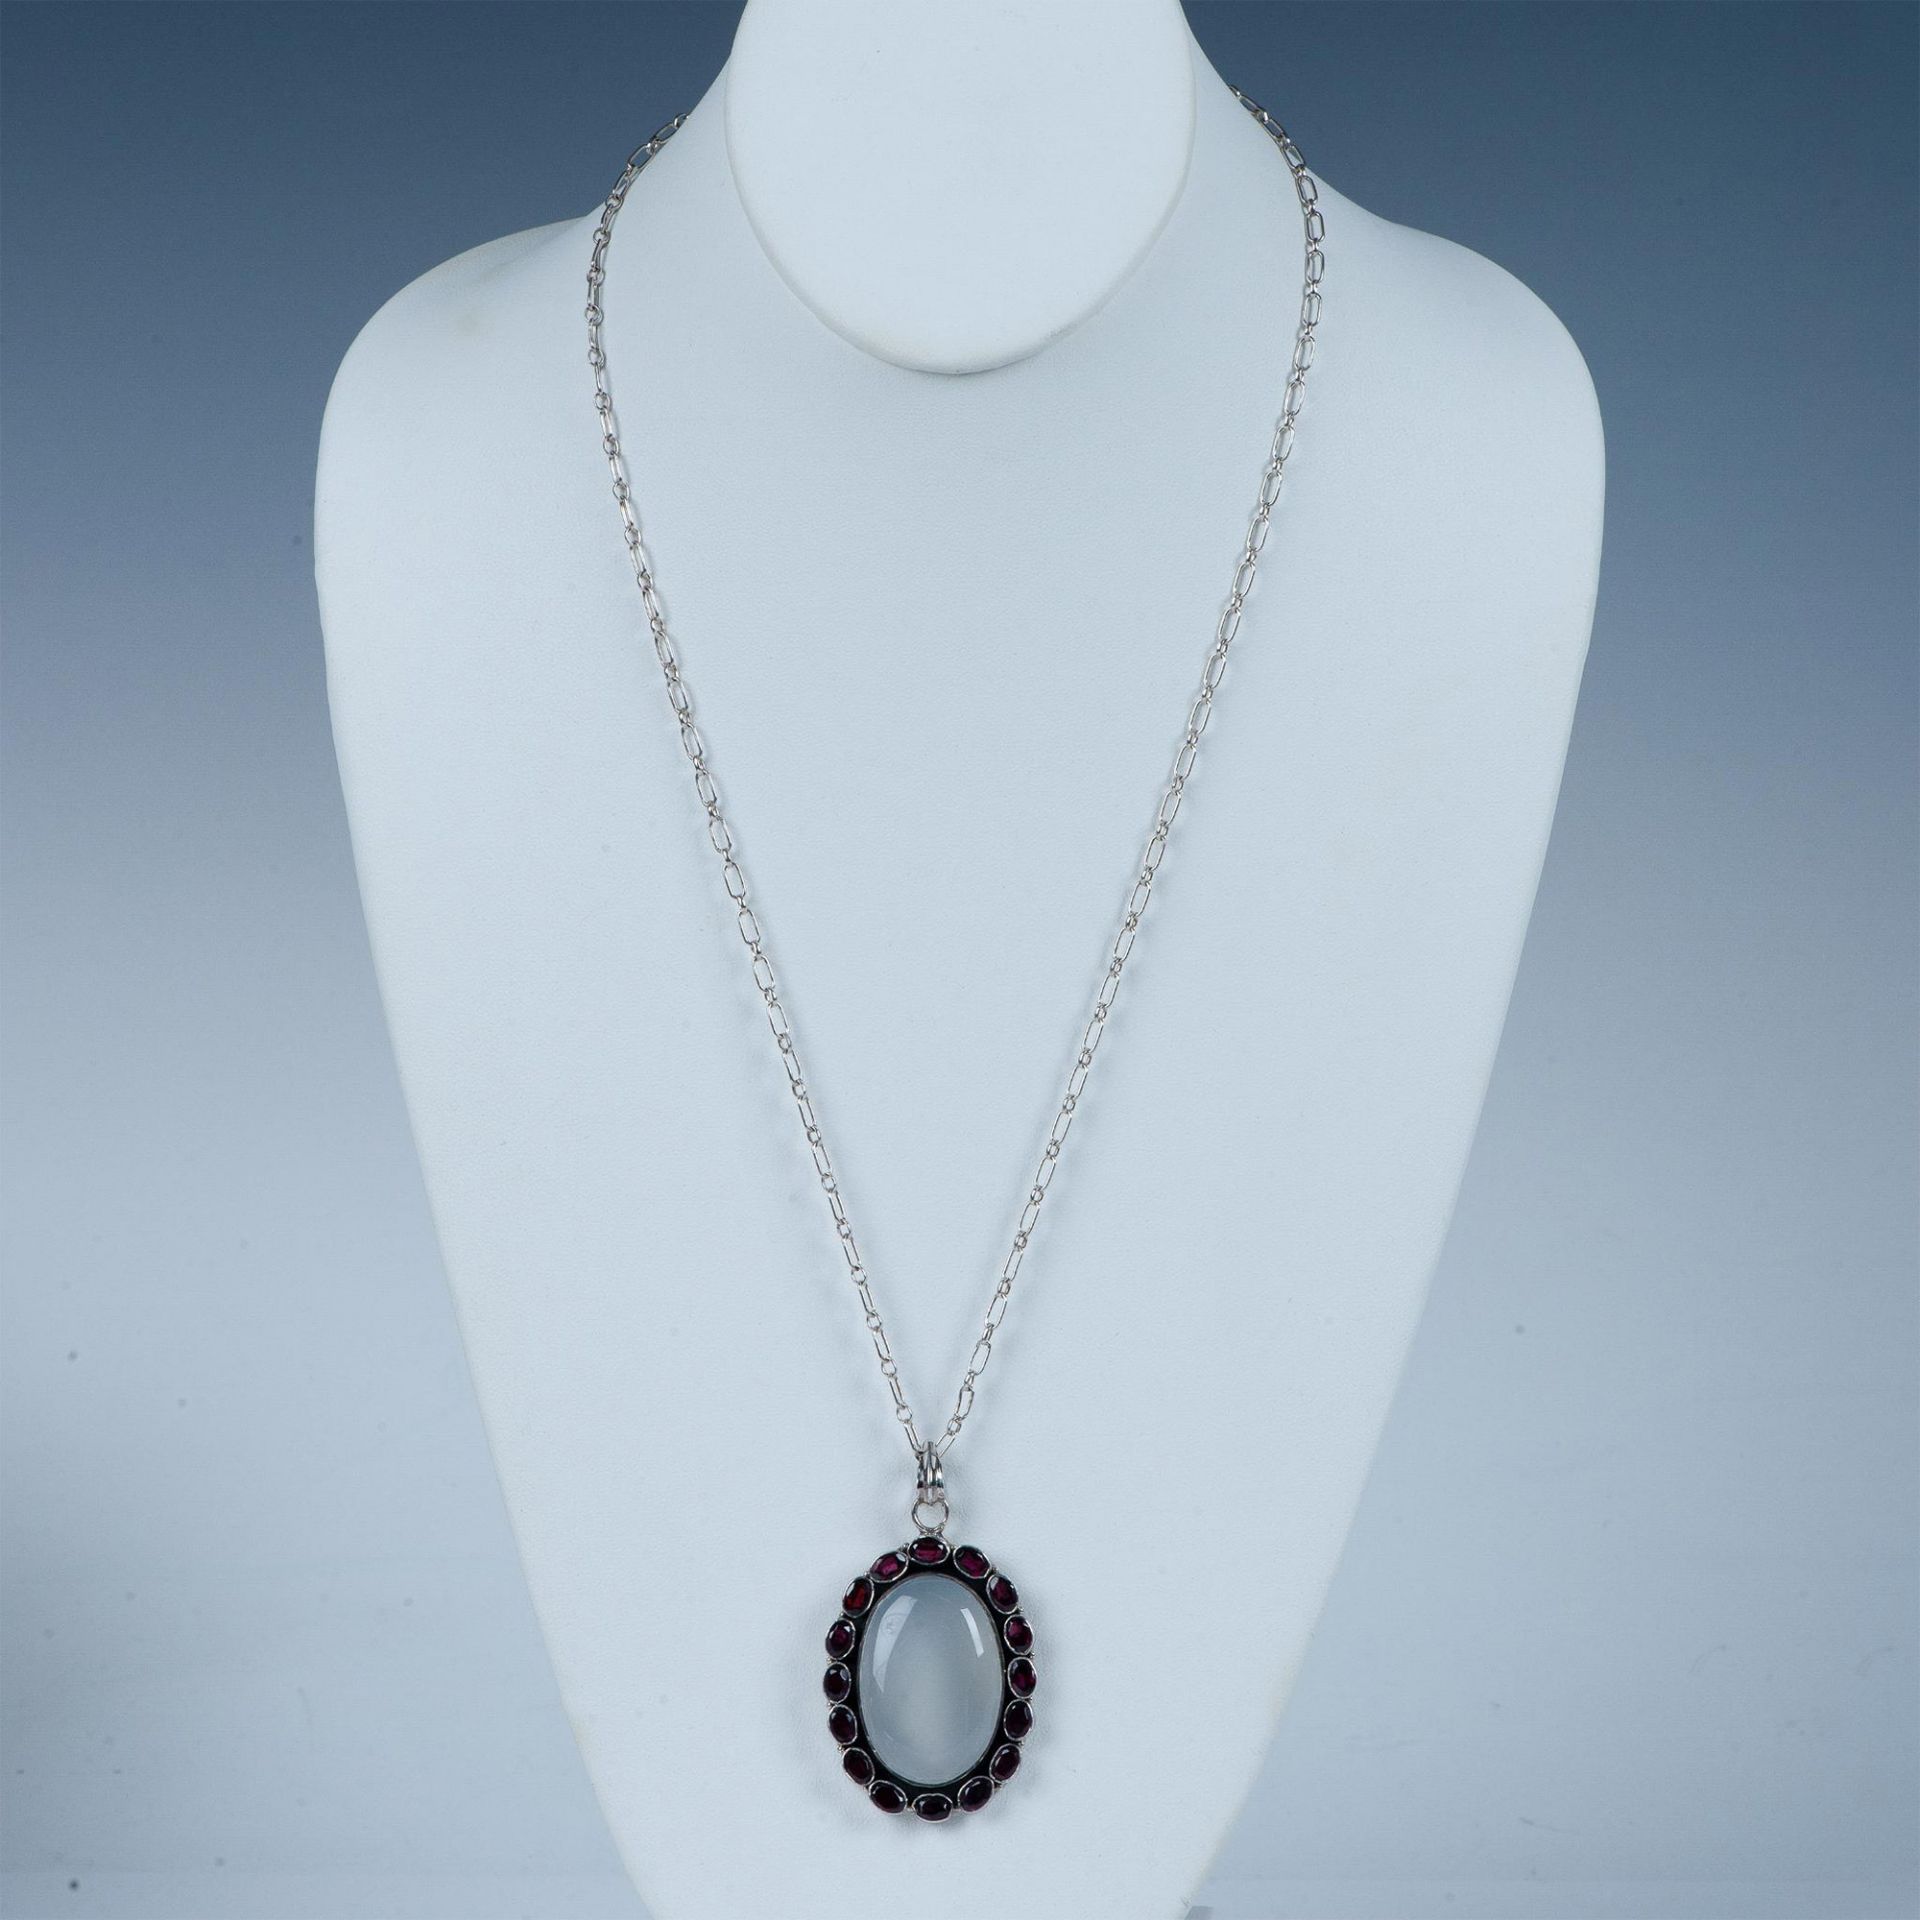 Vintage Sterling Silver, Moonstone & Garnet Pendant Necklace - Image 2 of 7